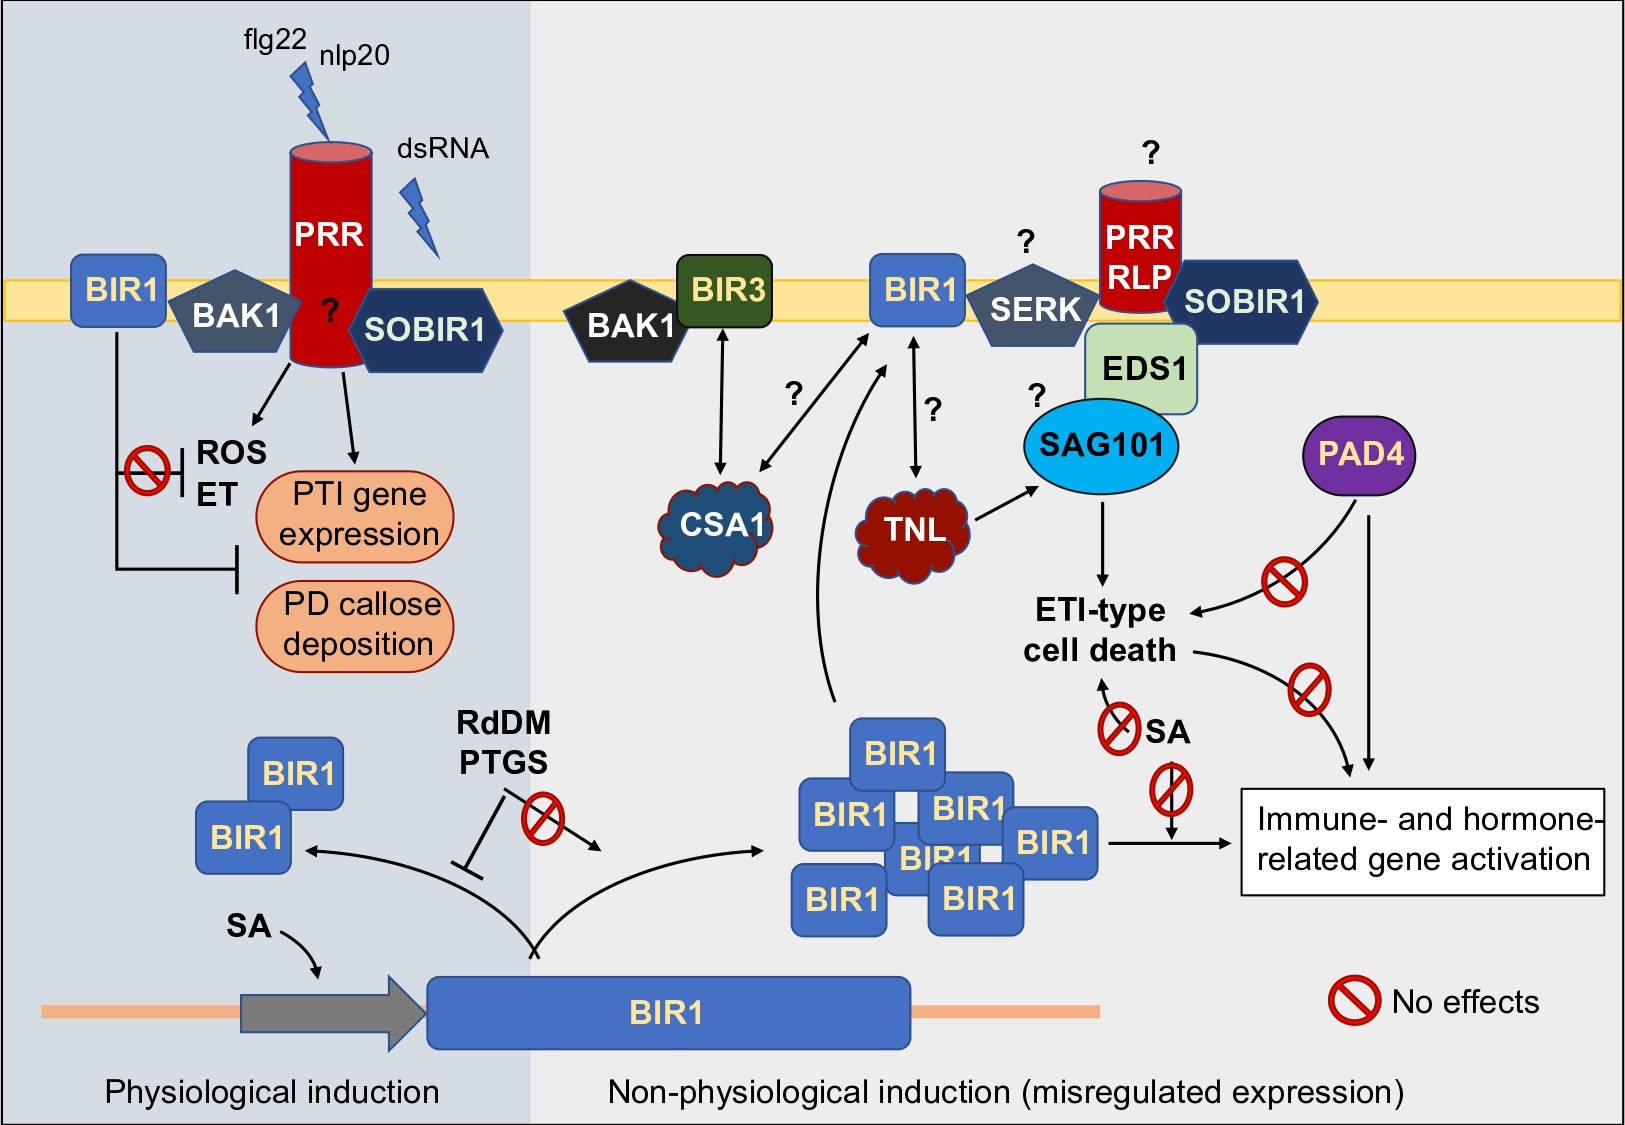 Working model for BIR1 homeostasis